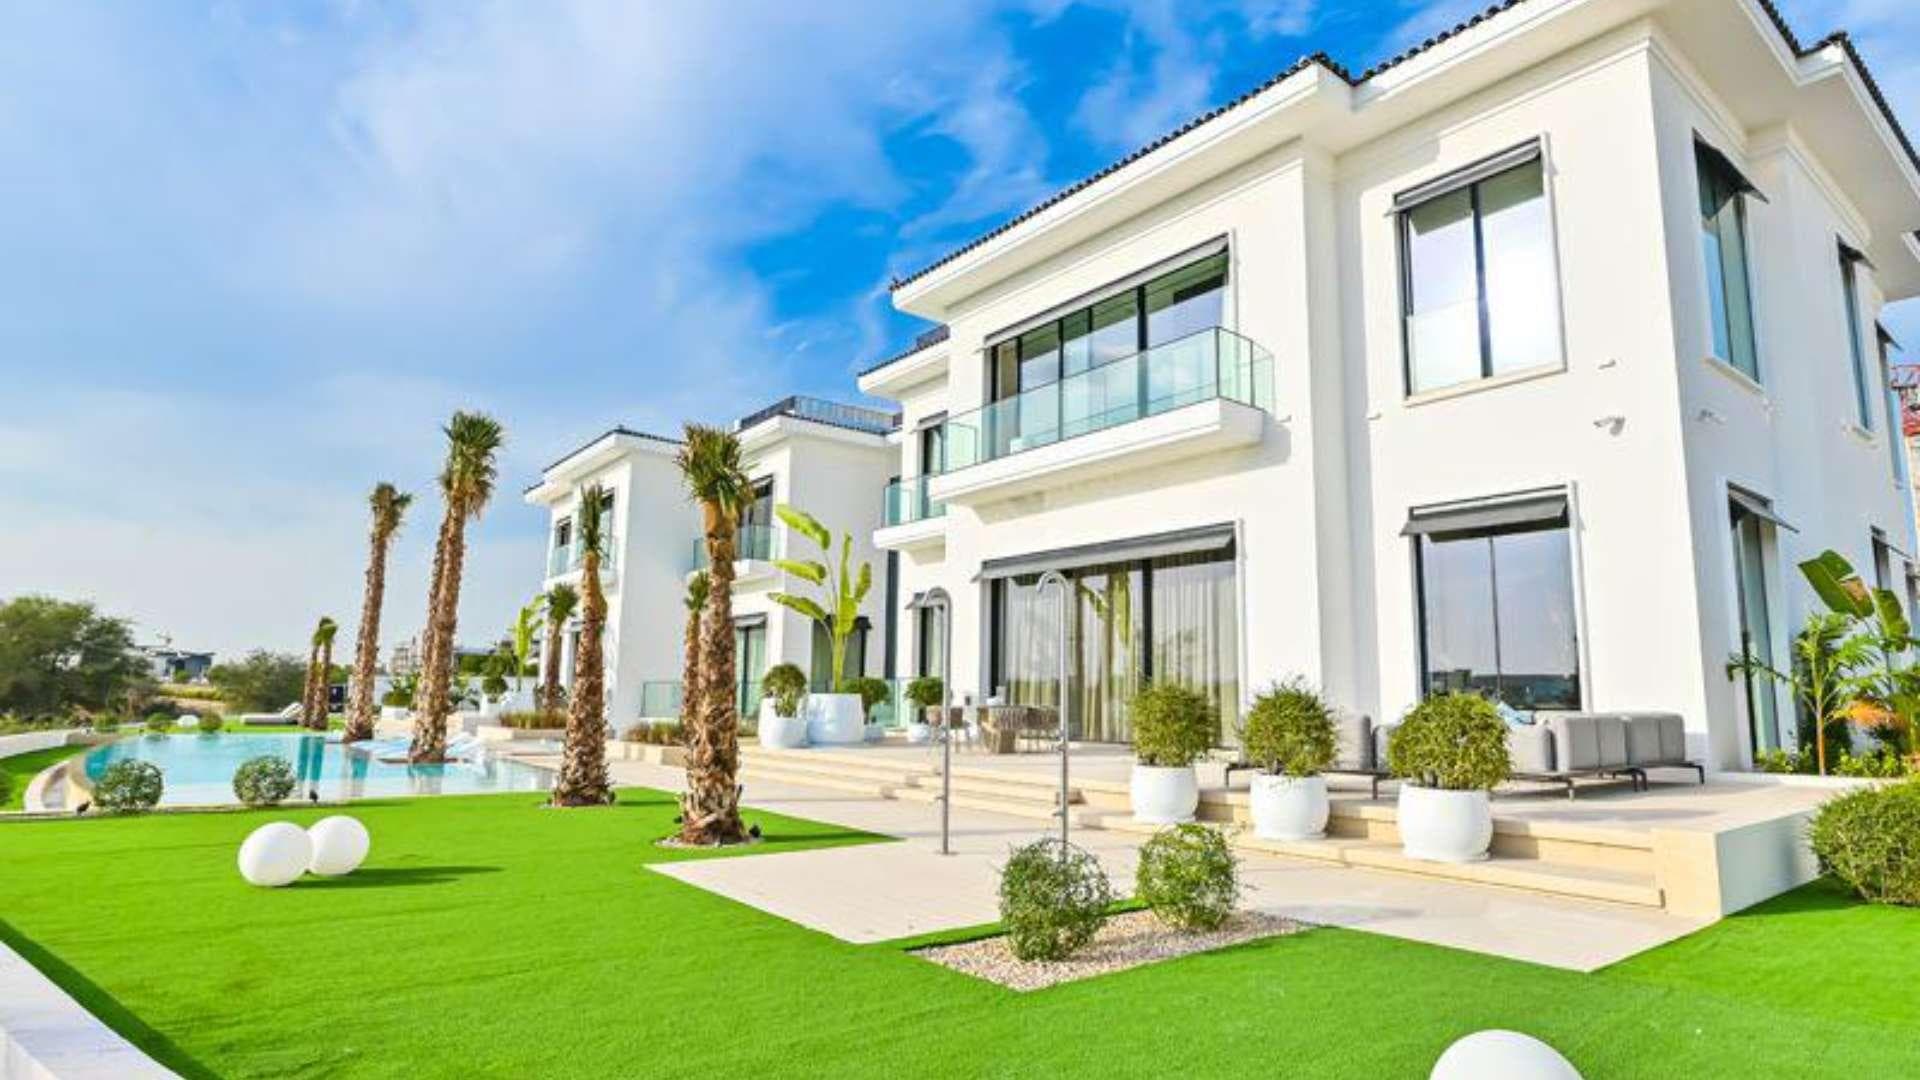 7 Bedroom Villa For Sale Dubai Hills Lp20693 1c8ba8d5f869f900.jpg